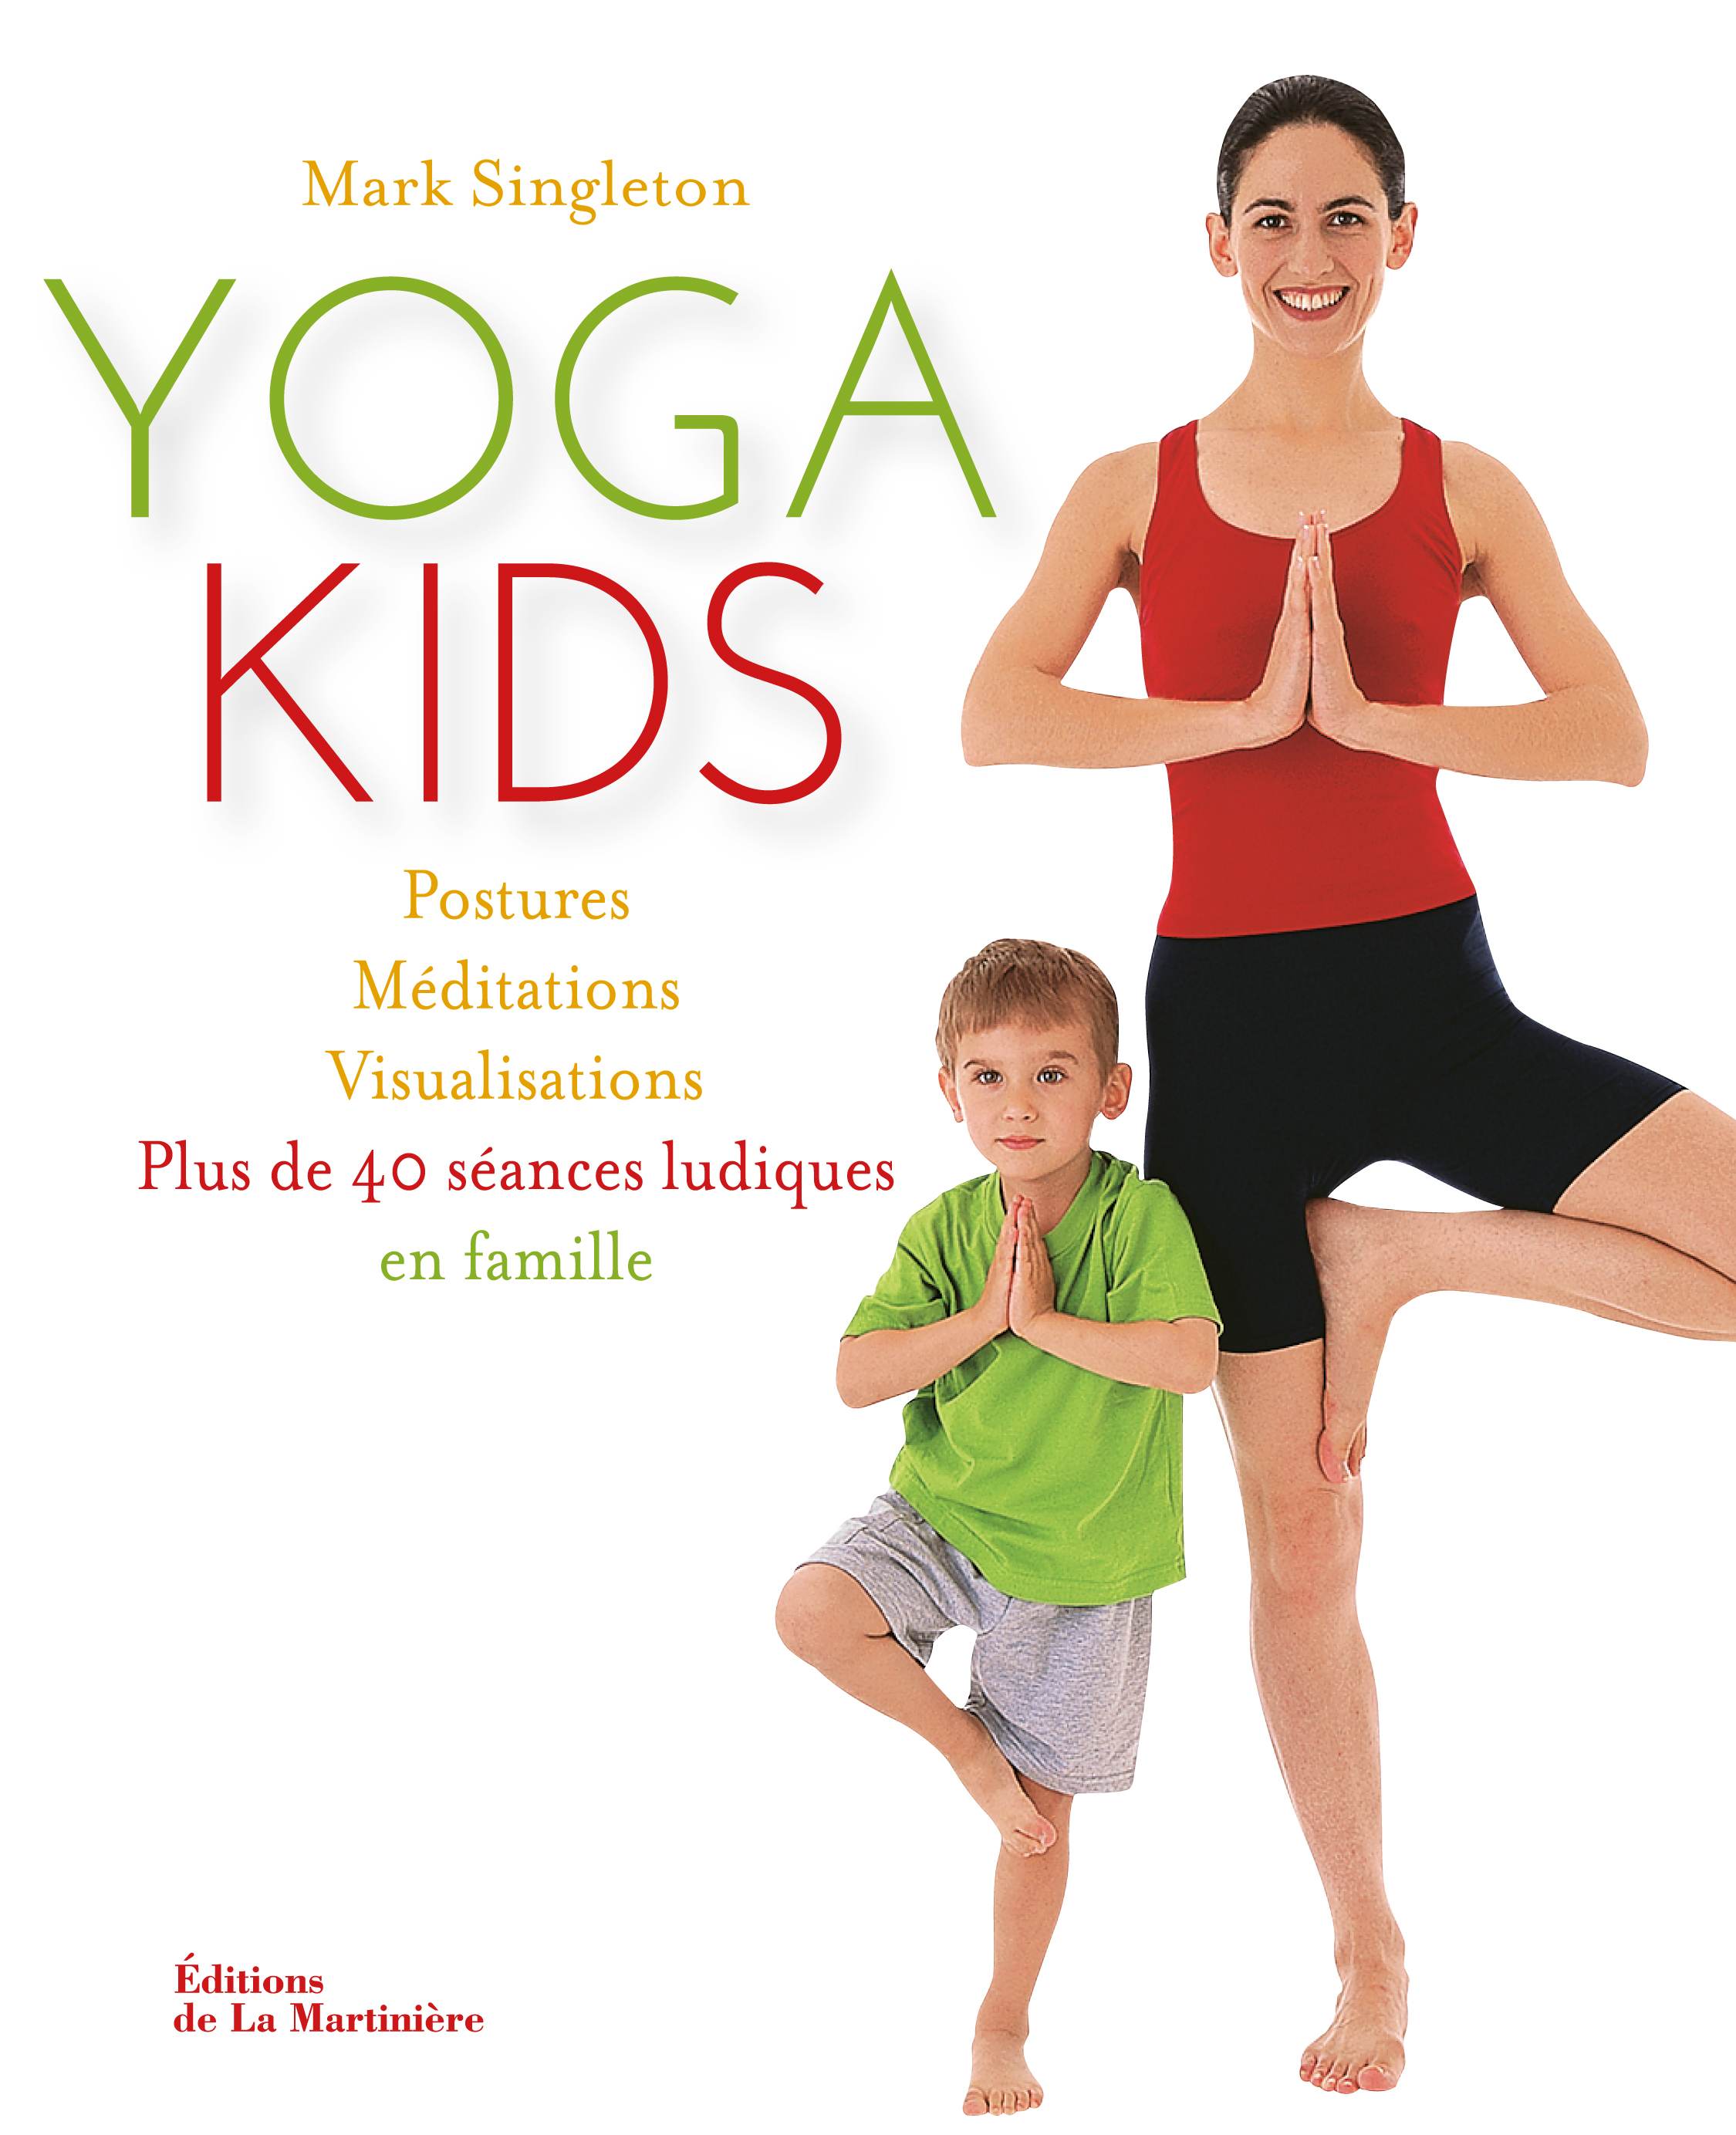 Yoga Kids : LE guide pour pratiquer le yoga en famille